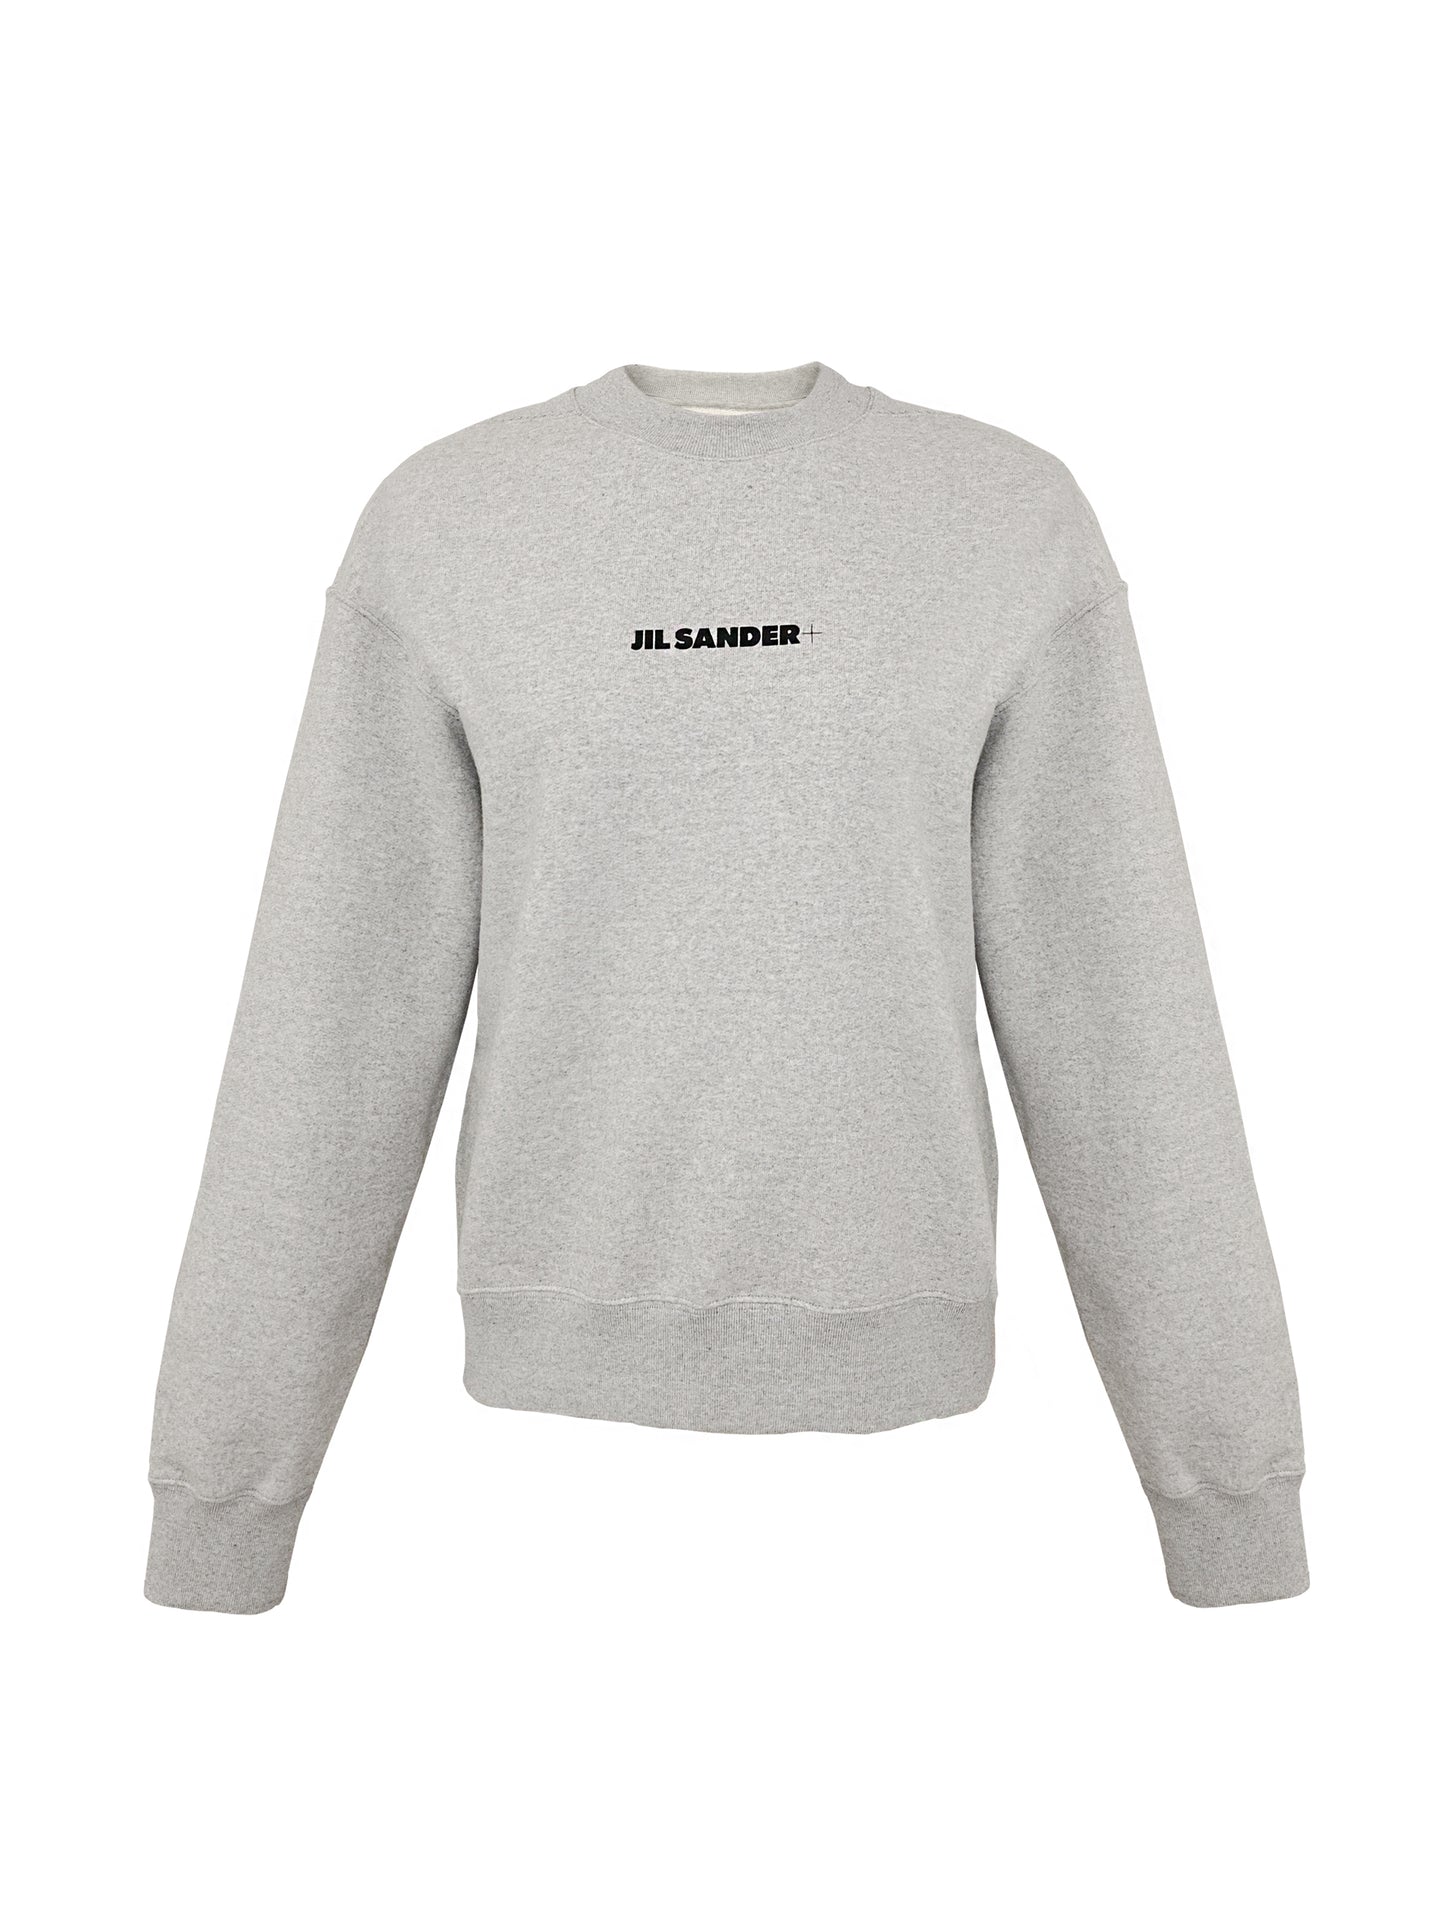 Hellgraues Melliert Sweatshirt mit schwarzem Jil Sander-Logo